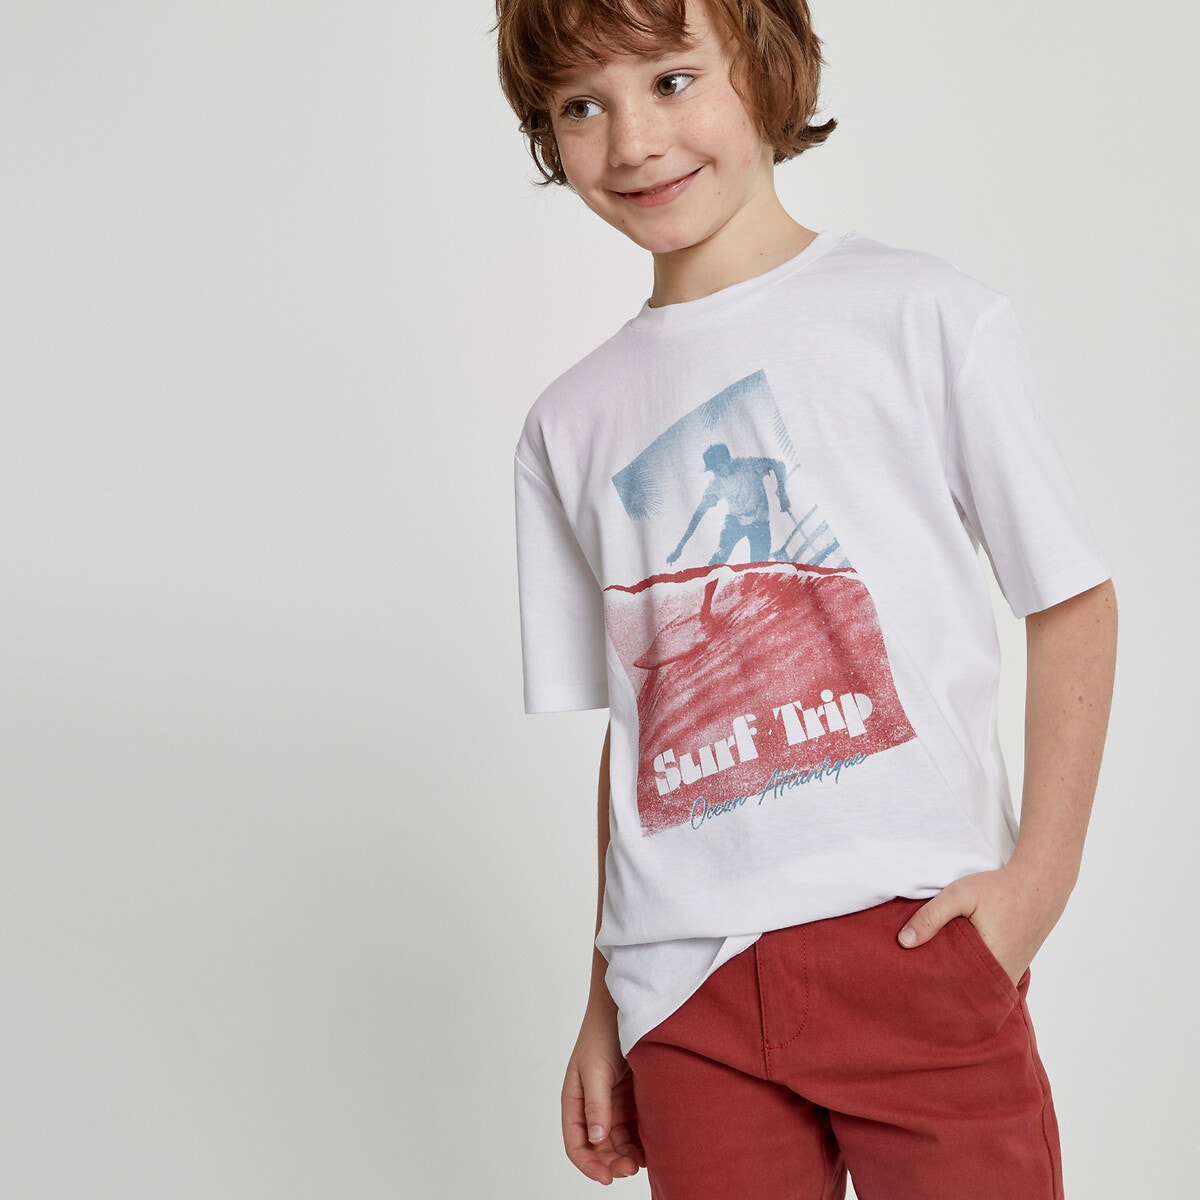 Μόδα > Παιδικά > Αγόρι > T-shirt, πόλο > Κοντά μανίκια T-shirt με στρογγυλή λαιμόκοψη και στάμπα σέρφερ μπροστά